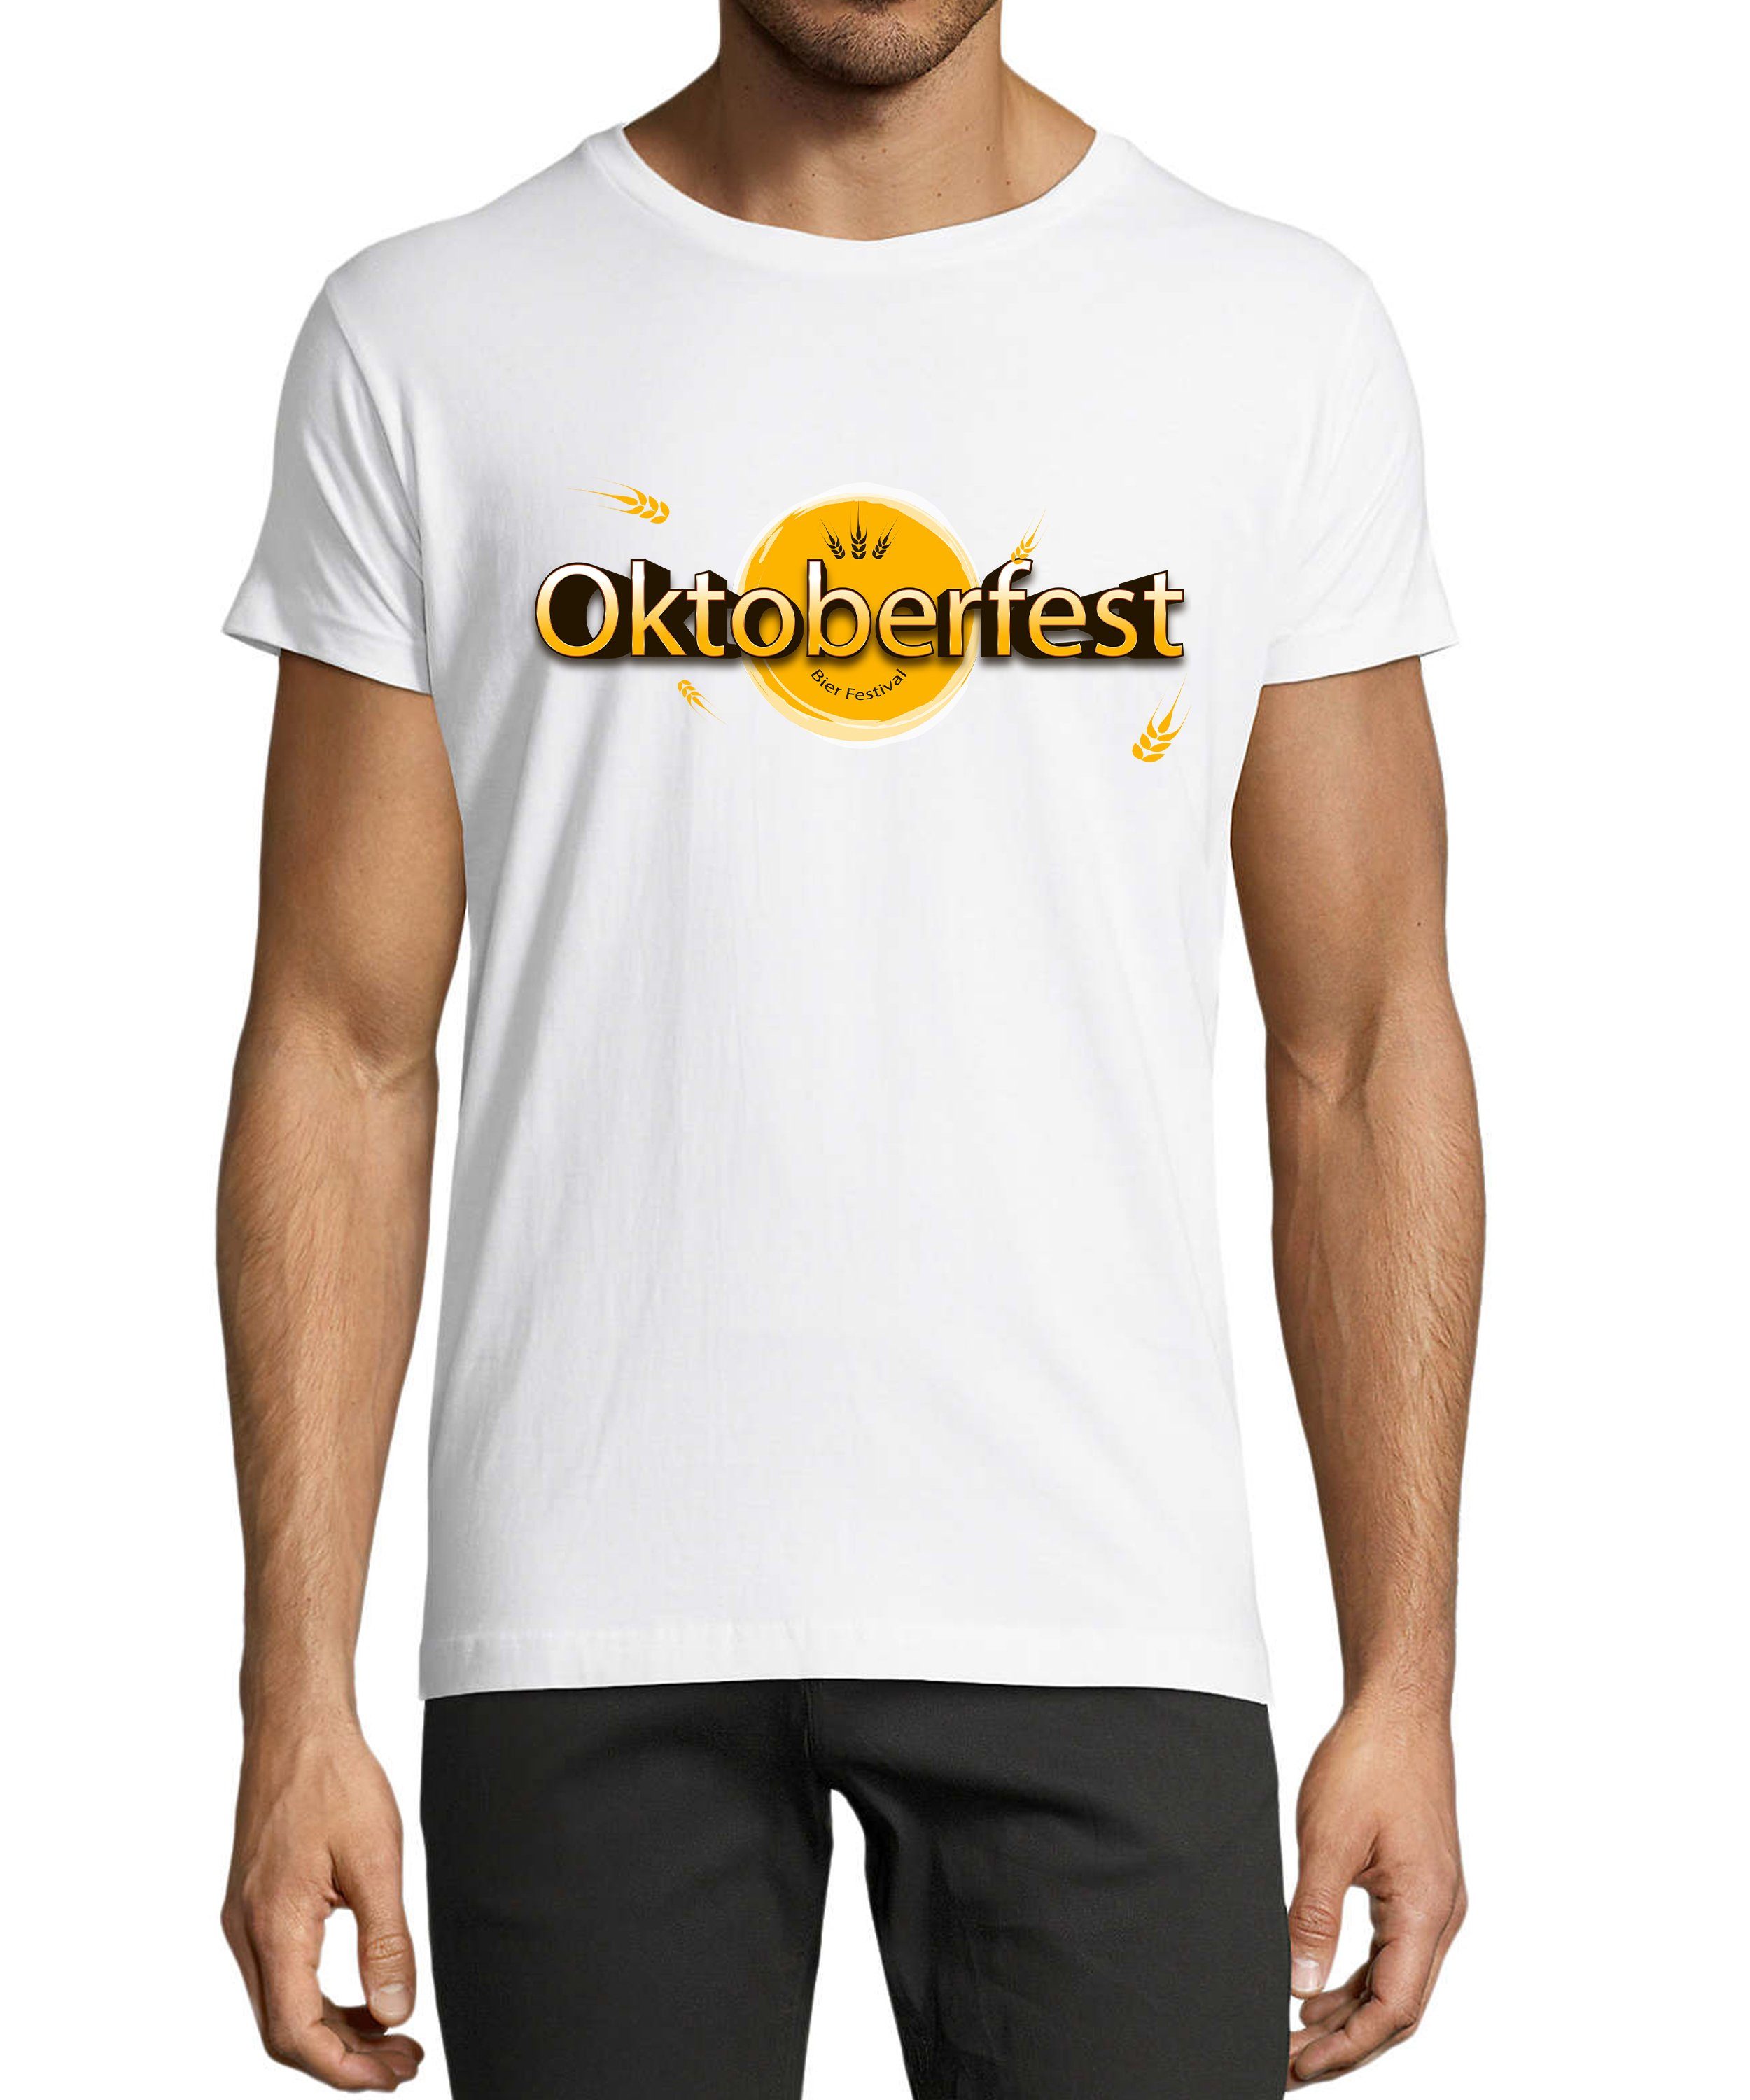 MyDesign24 T-Shirt Herren Party Shirt - Trinkshirt Oktoberfest T-Shirt Bier Festival Baumwollshirt mit Aufdruck Regular Fit, i325 weiss